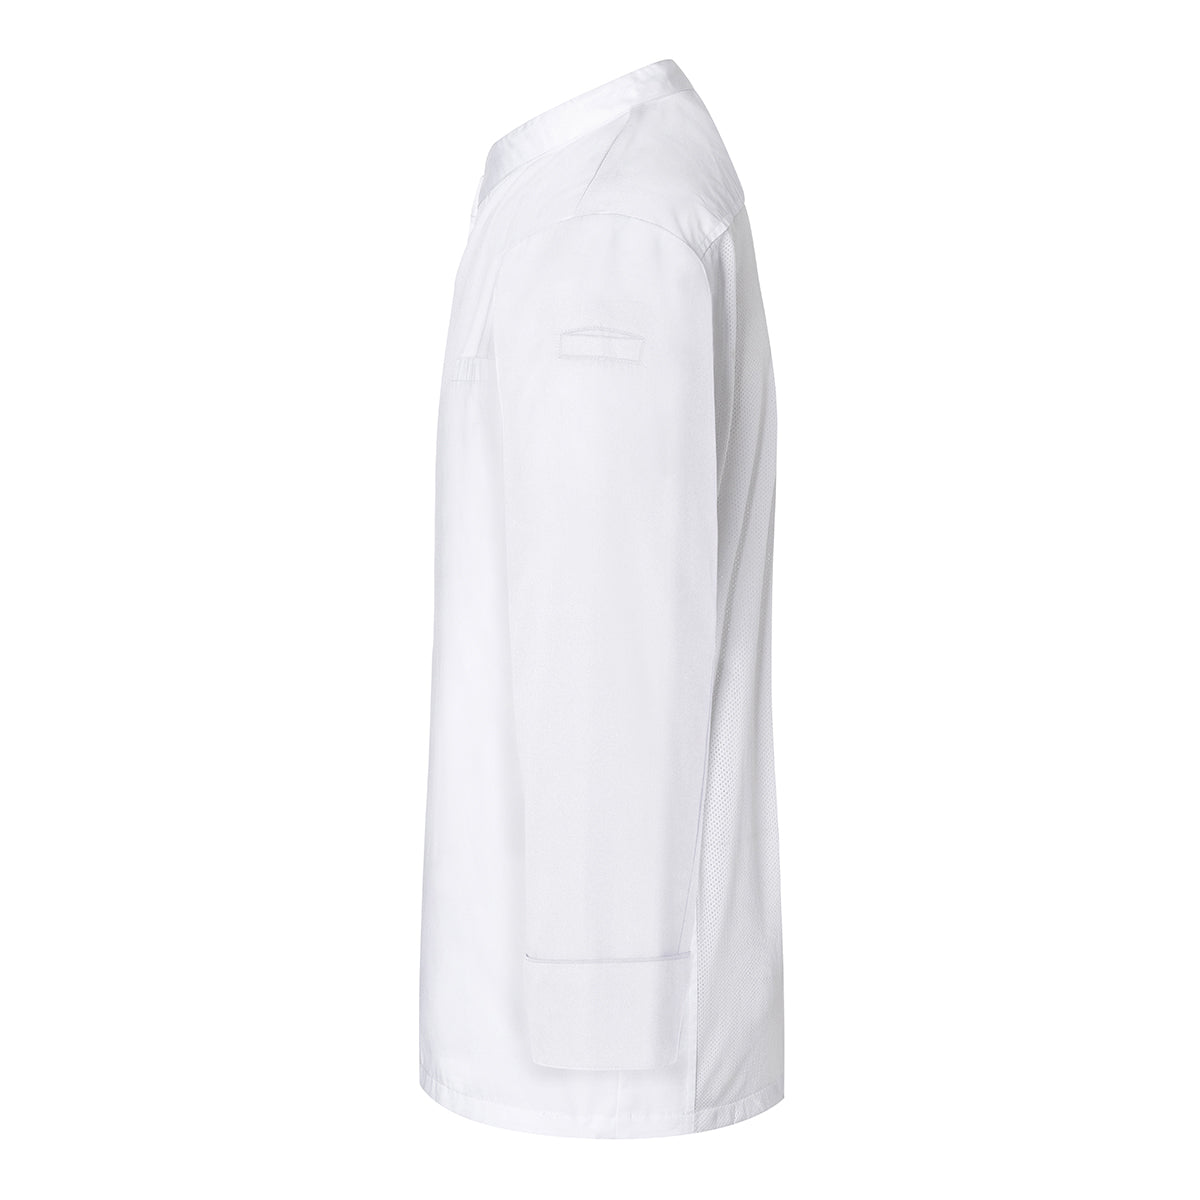 (6 stk) Karlowsky langermet skjorte - hvit - str. 4XL